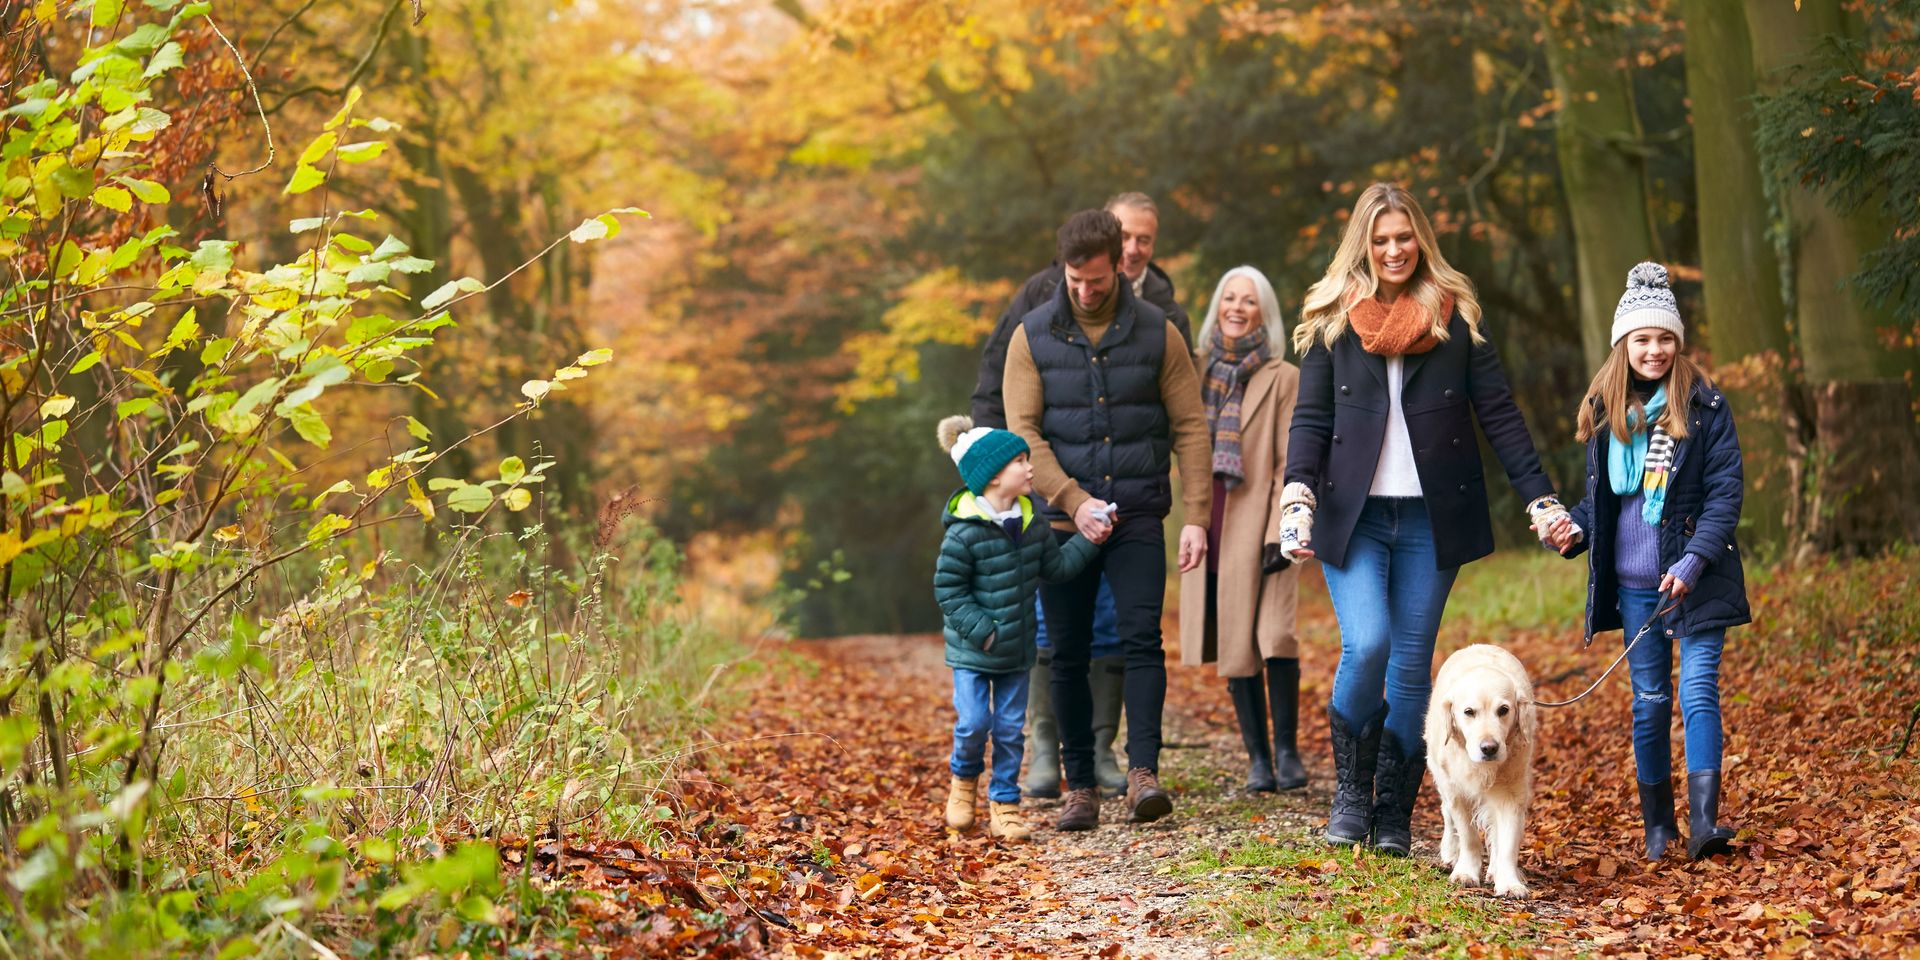 Irány a természet! - családi programok az őszi szünetre